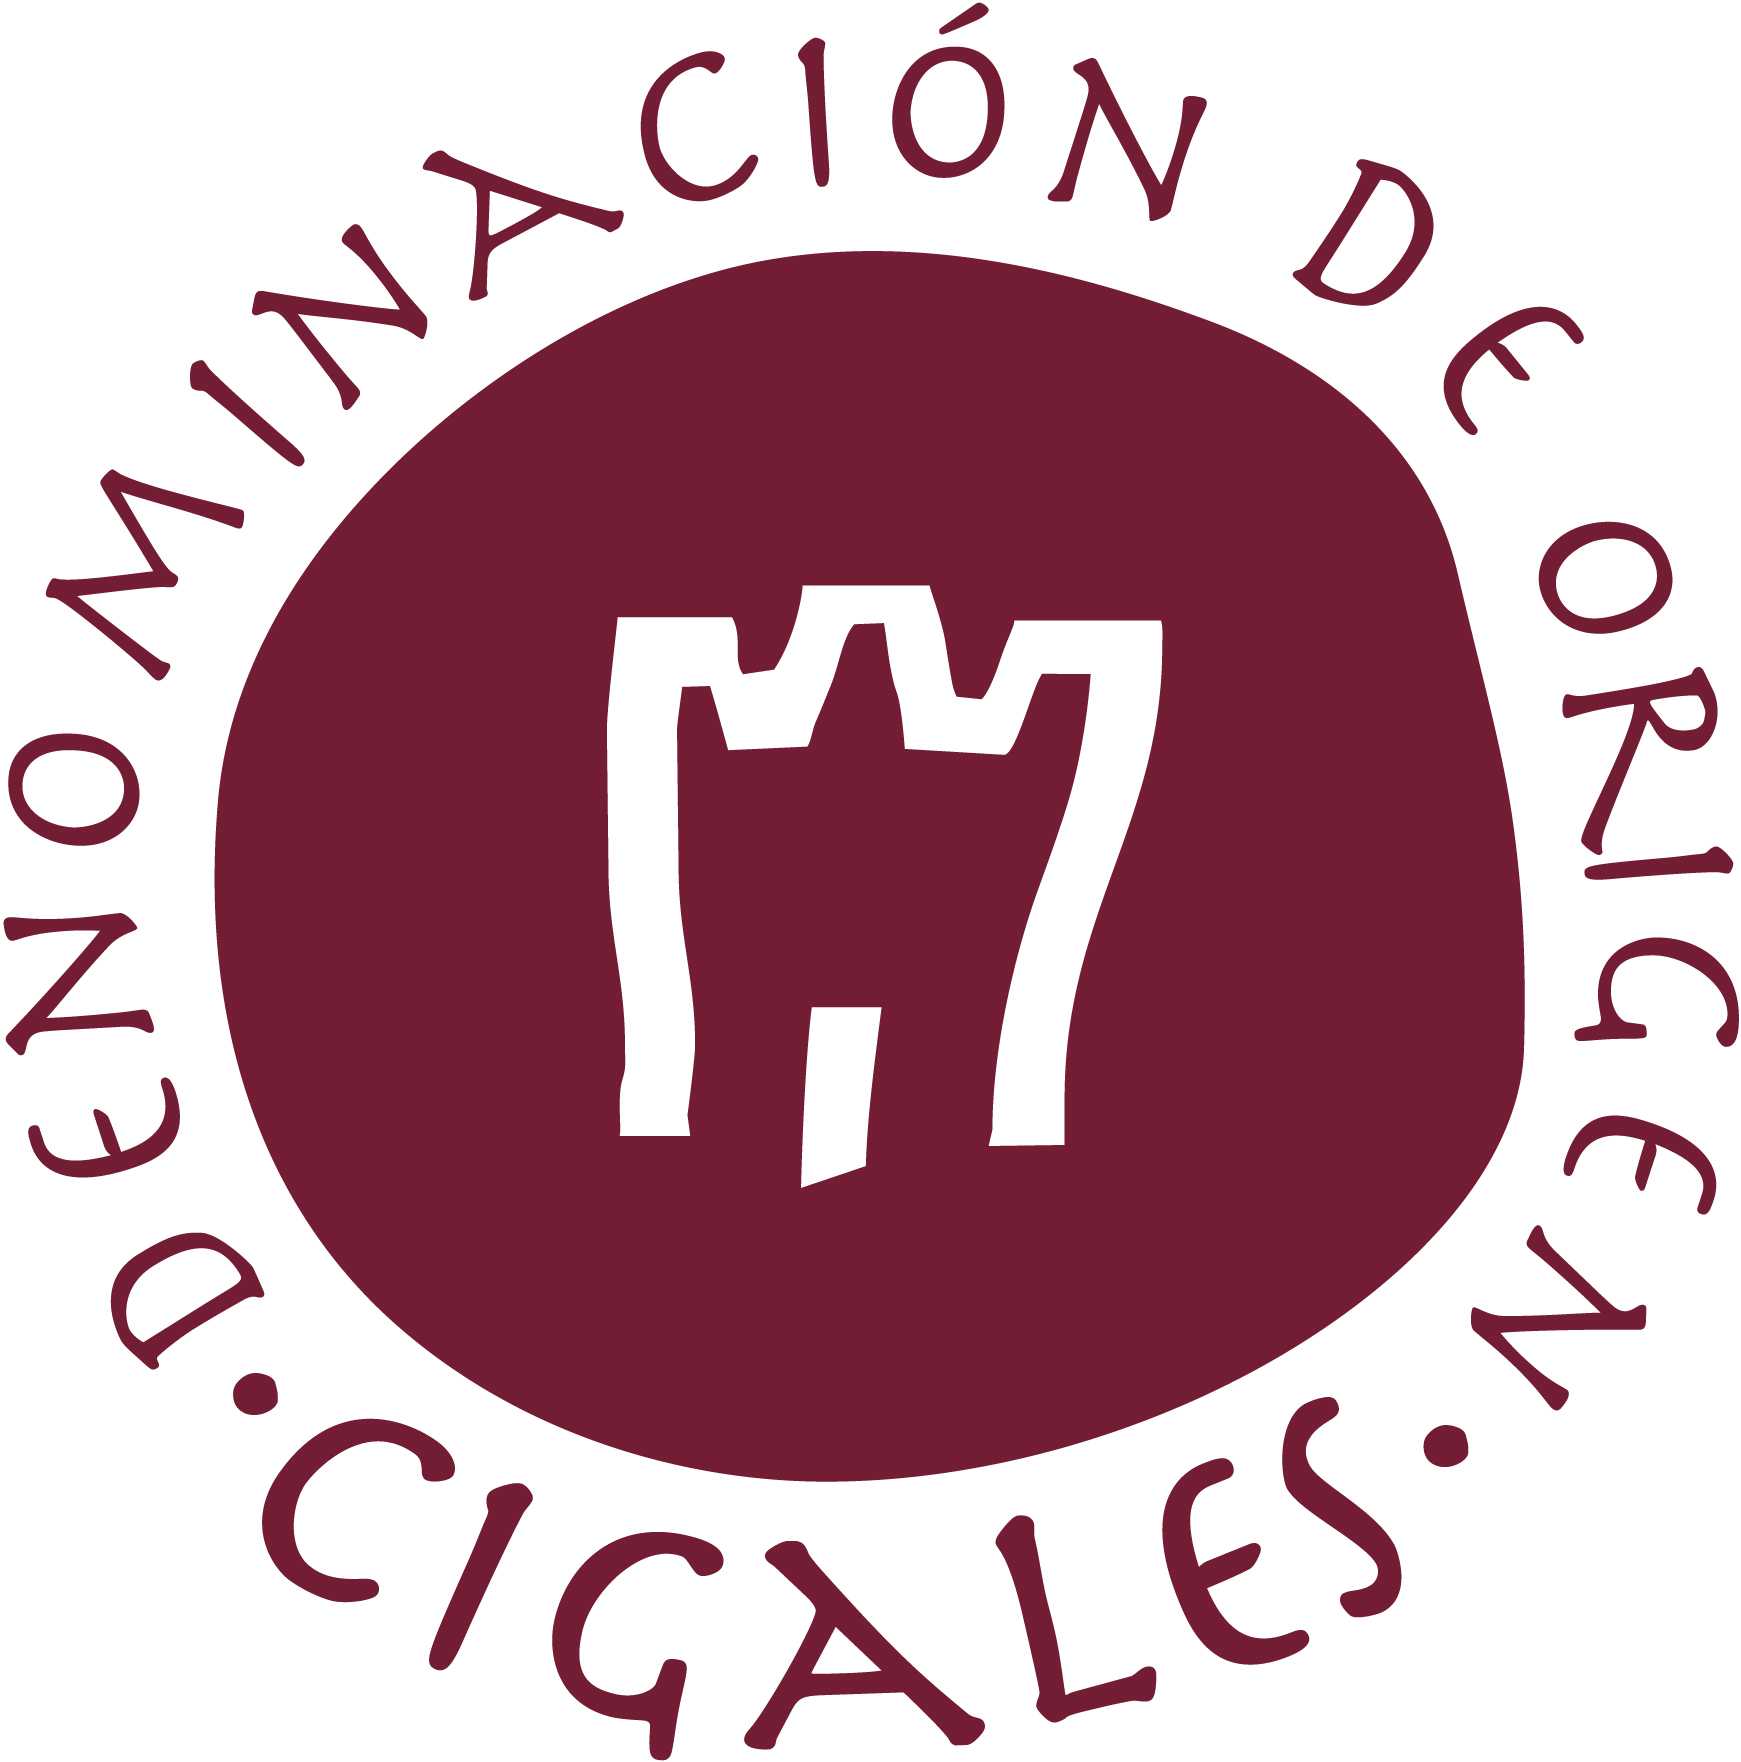 Logo Consejo Regulador de la DenominaciÃ³n de Origen Cigales